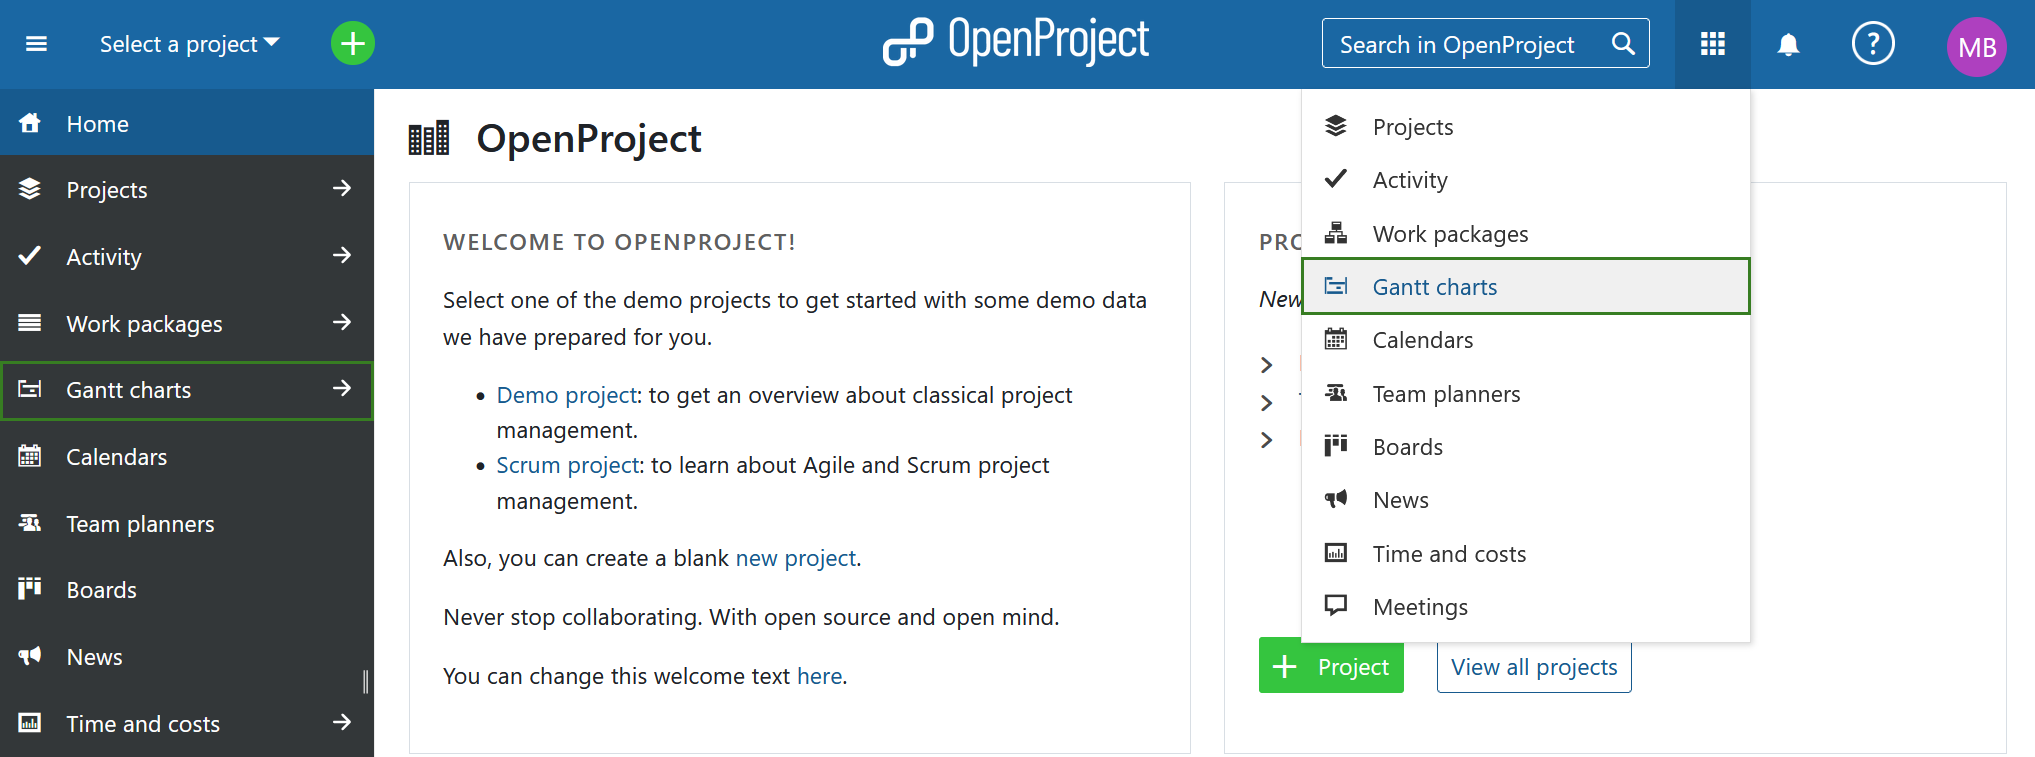 OpenProject’s Gantt charts module